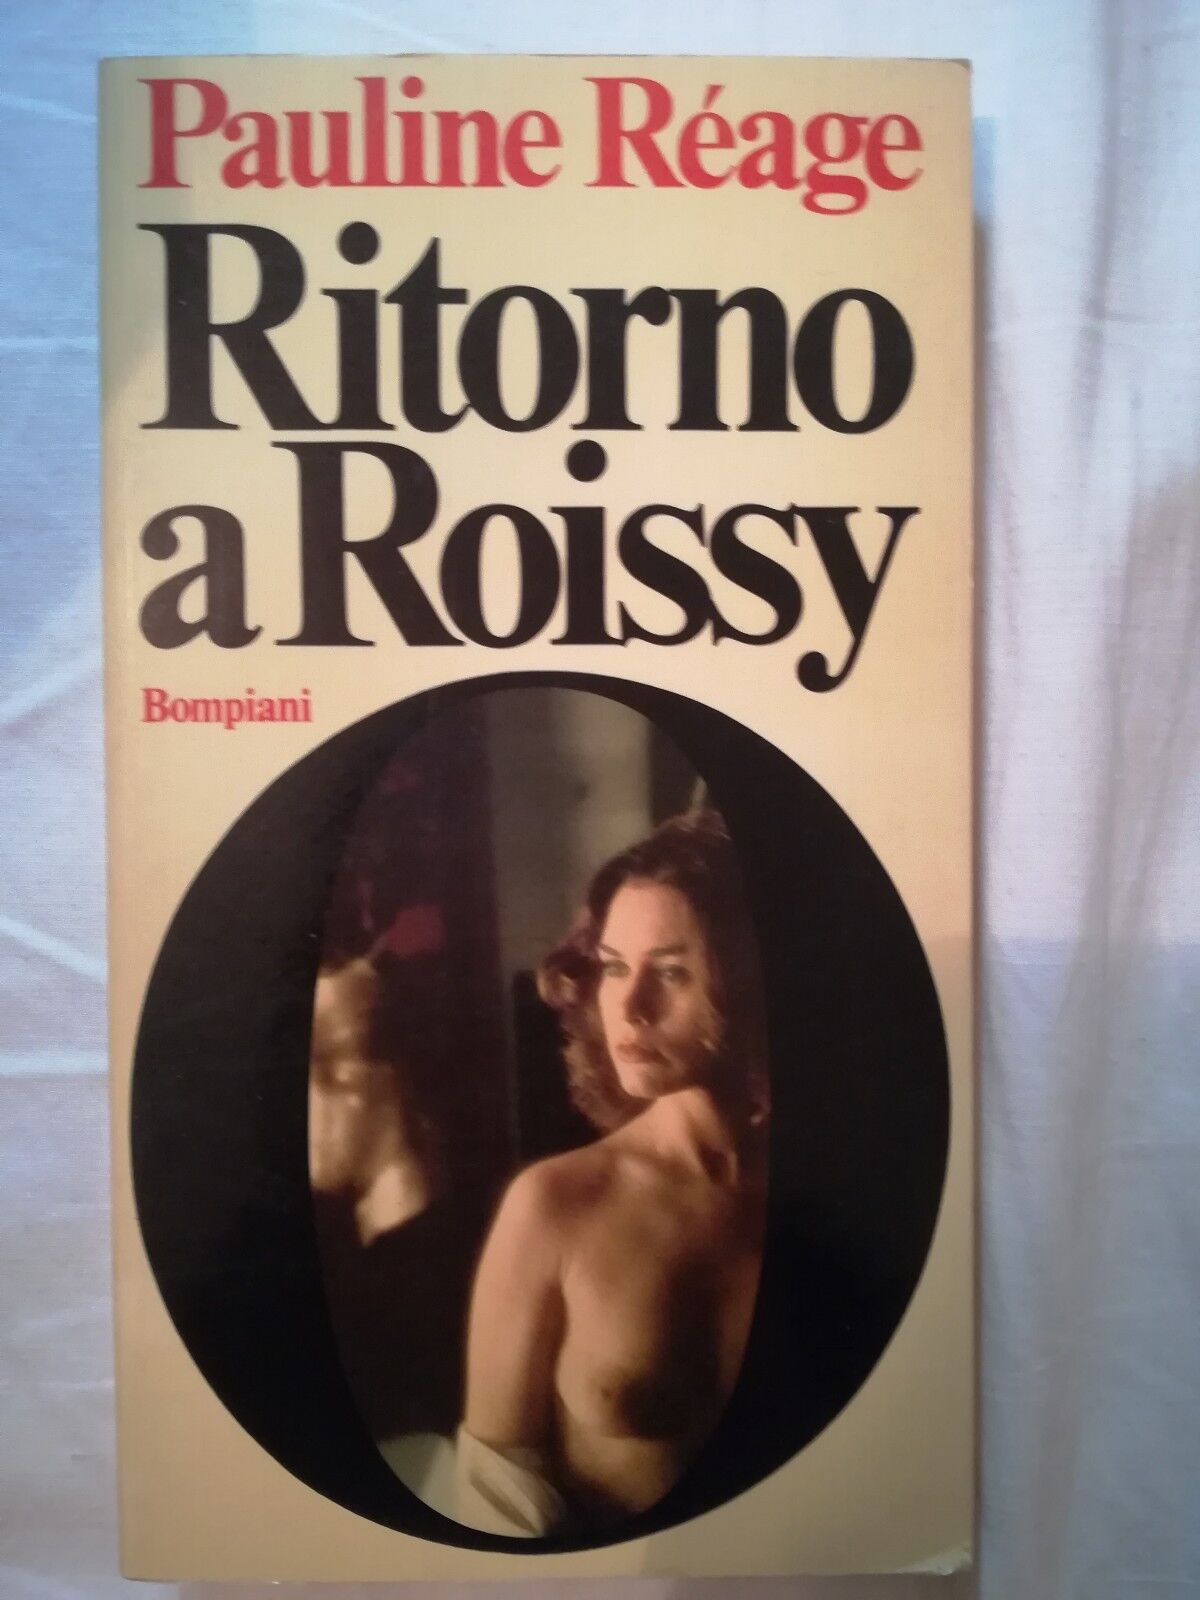 Ritorno a Roissy - Pauline Reage - Bompiani - 1976 - M